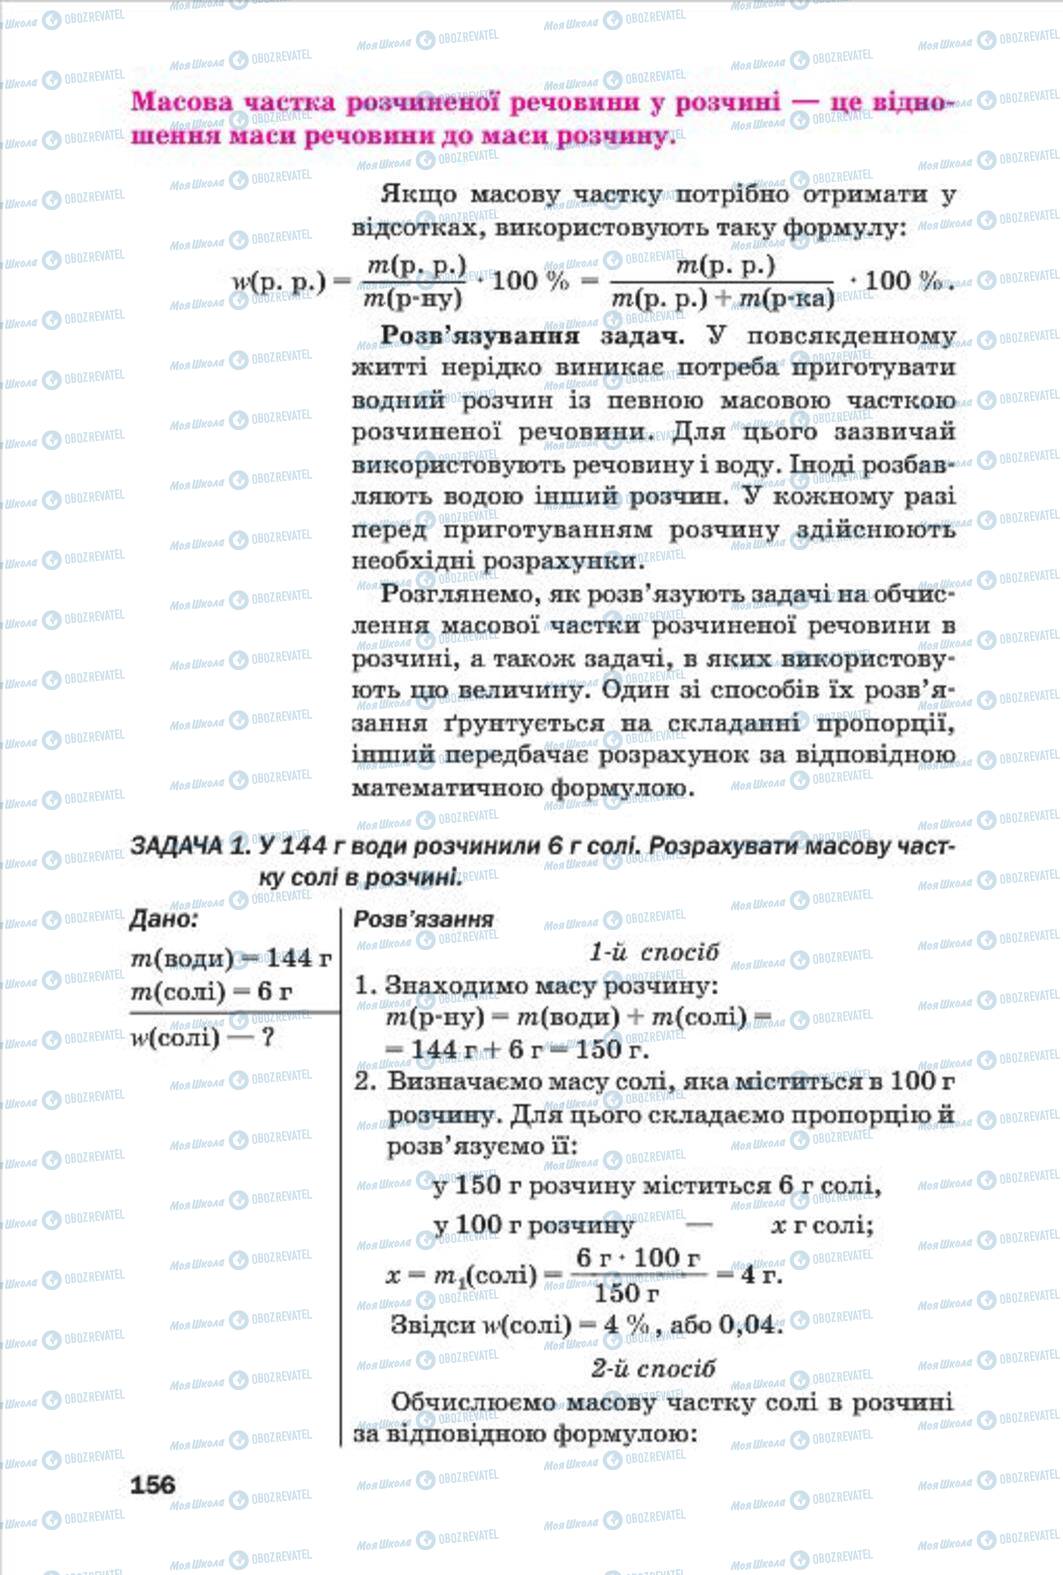 Підручники Хімія 7 клас сторінка 156